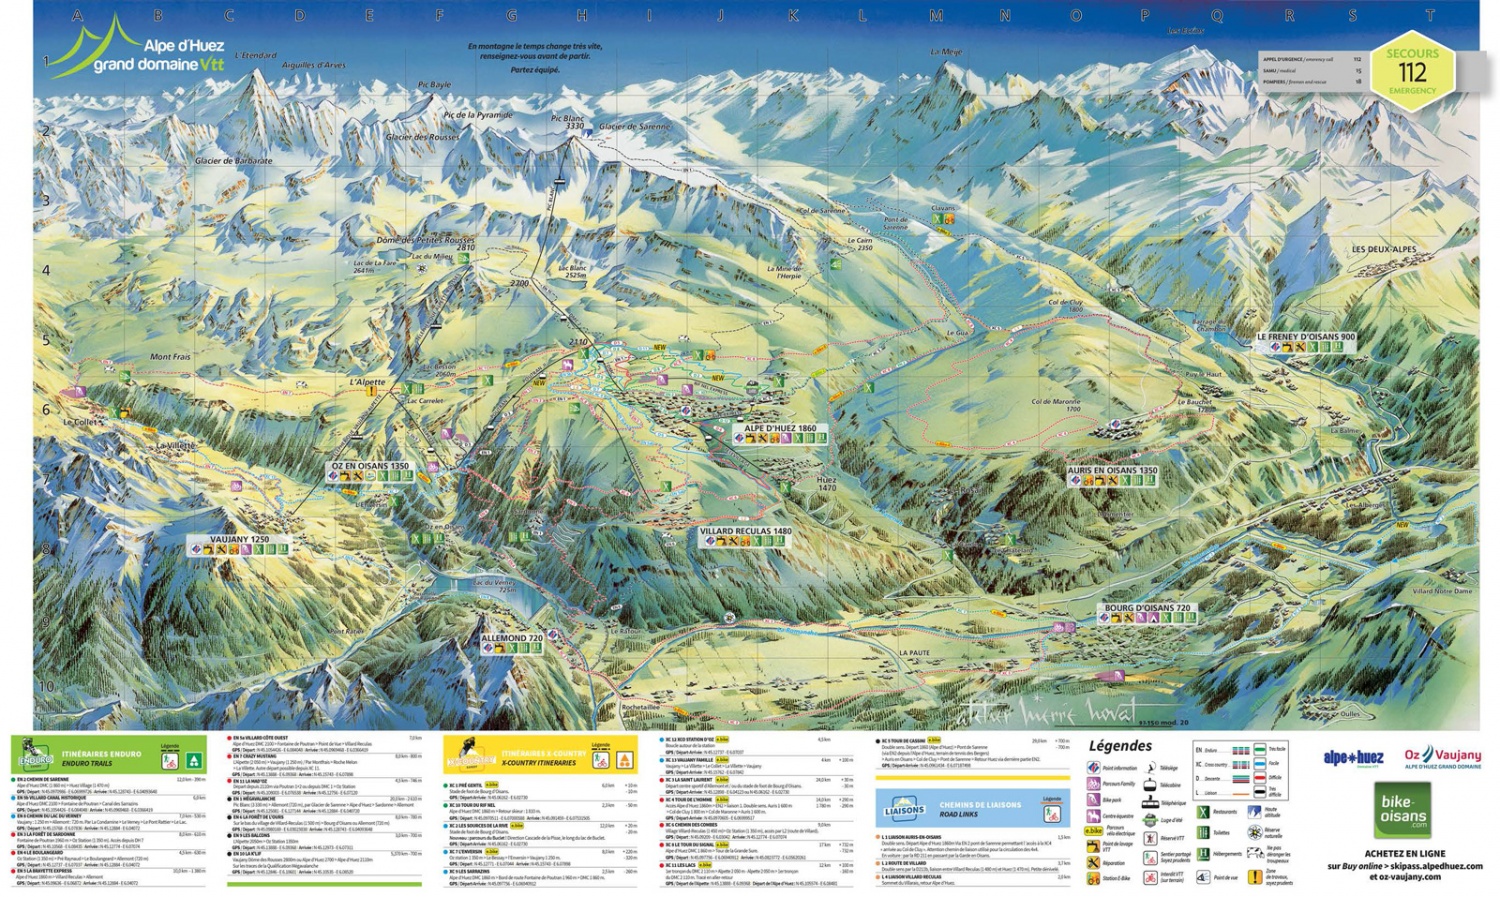 Montée de l'Alpe d'Huez - Bike Oisans